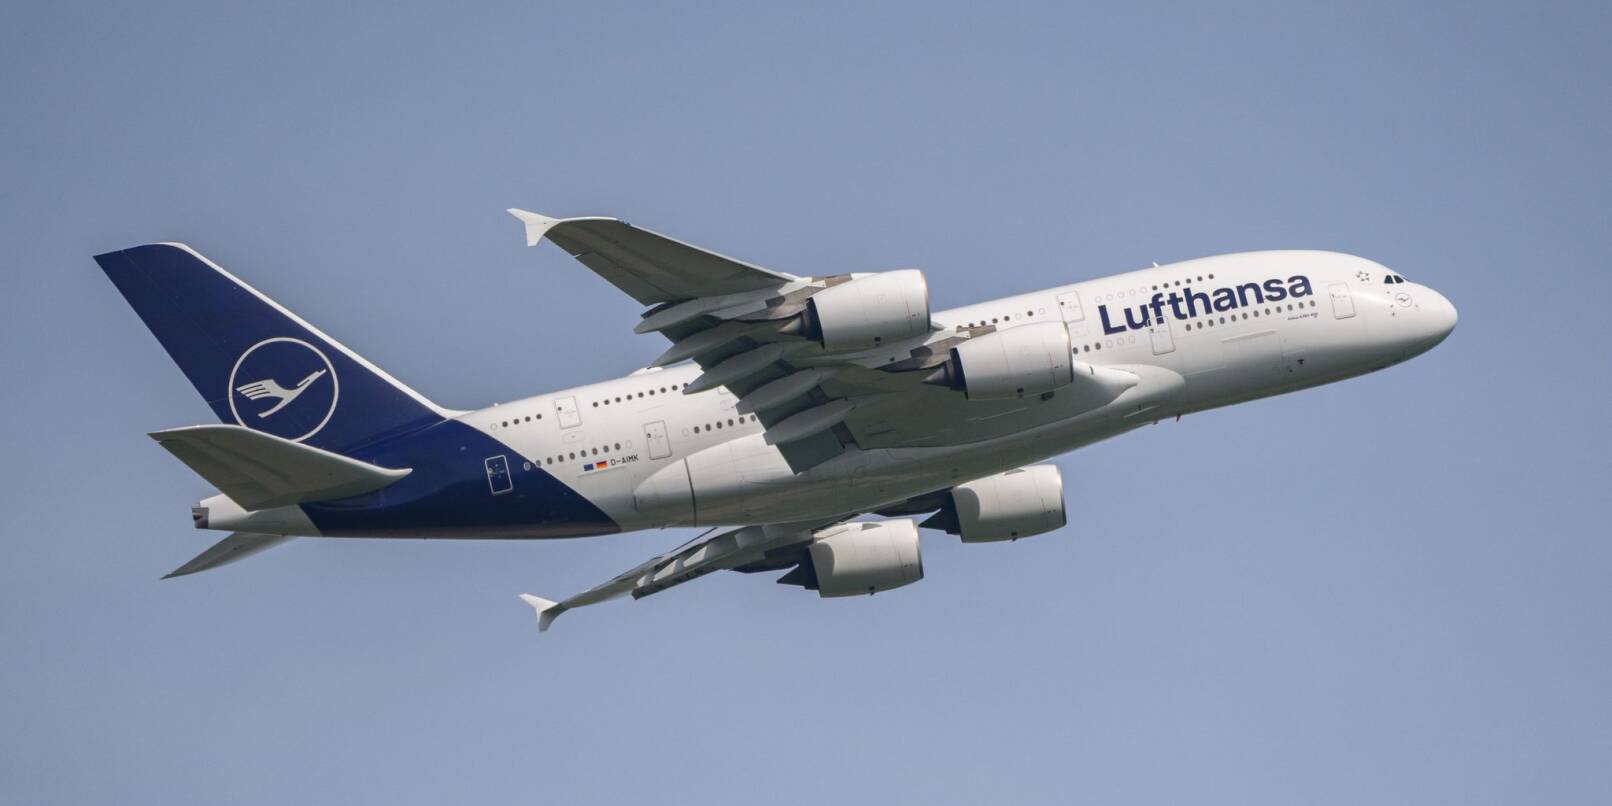 Eine Lufthansa-Maschine des Typs Airbus A380 beim im Anflug auf den Flughafen.